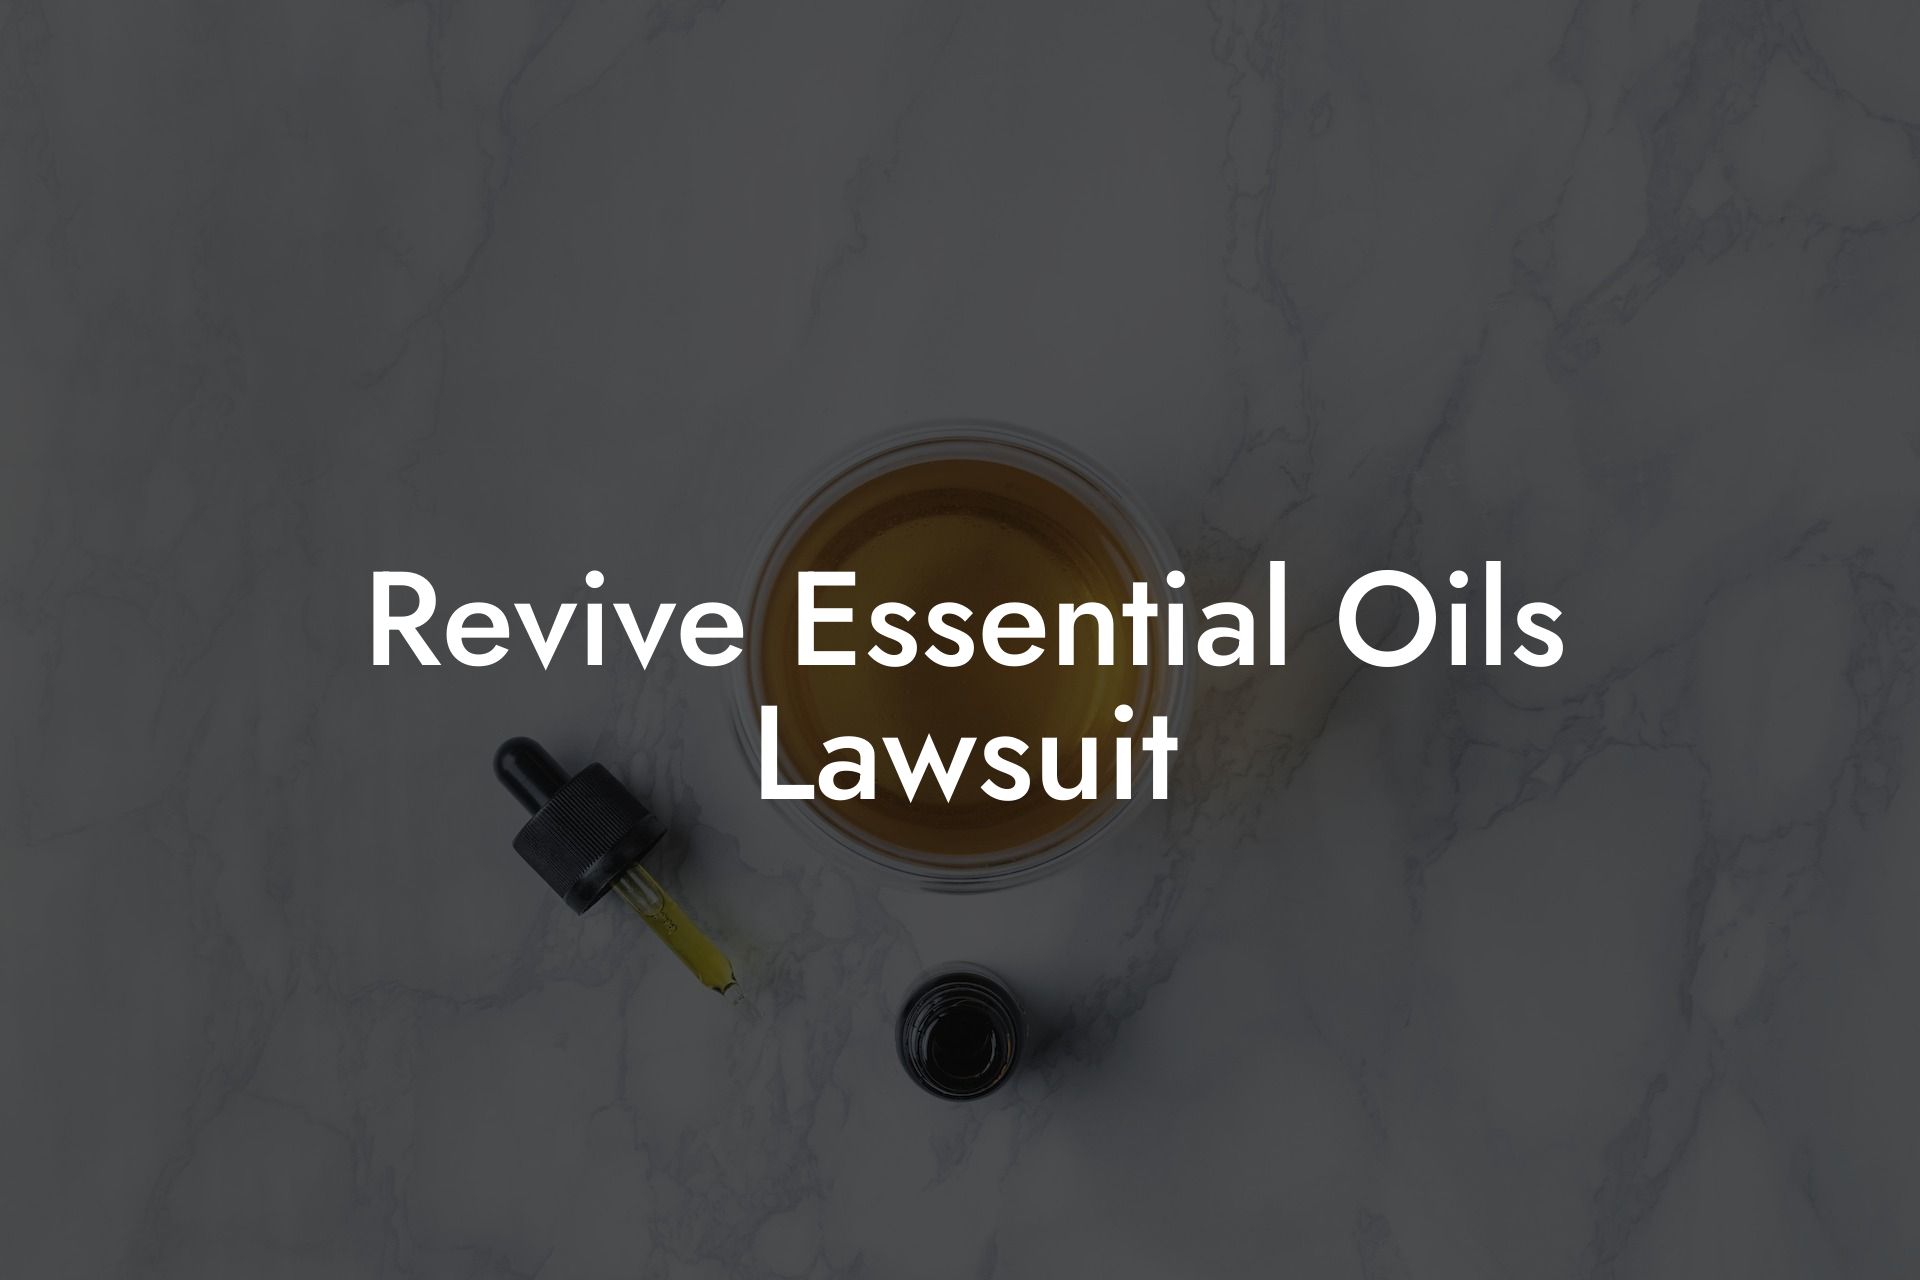 Revive Essential Oils Lawsuit